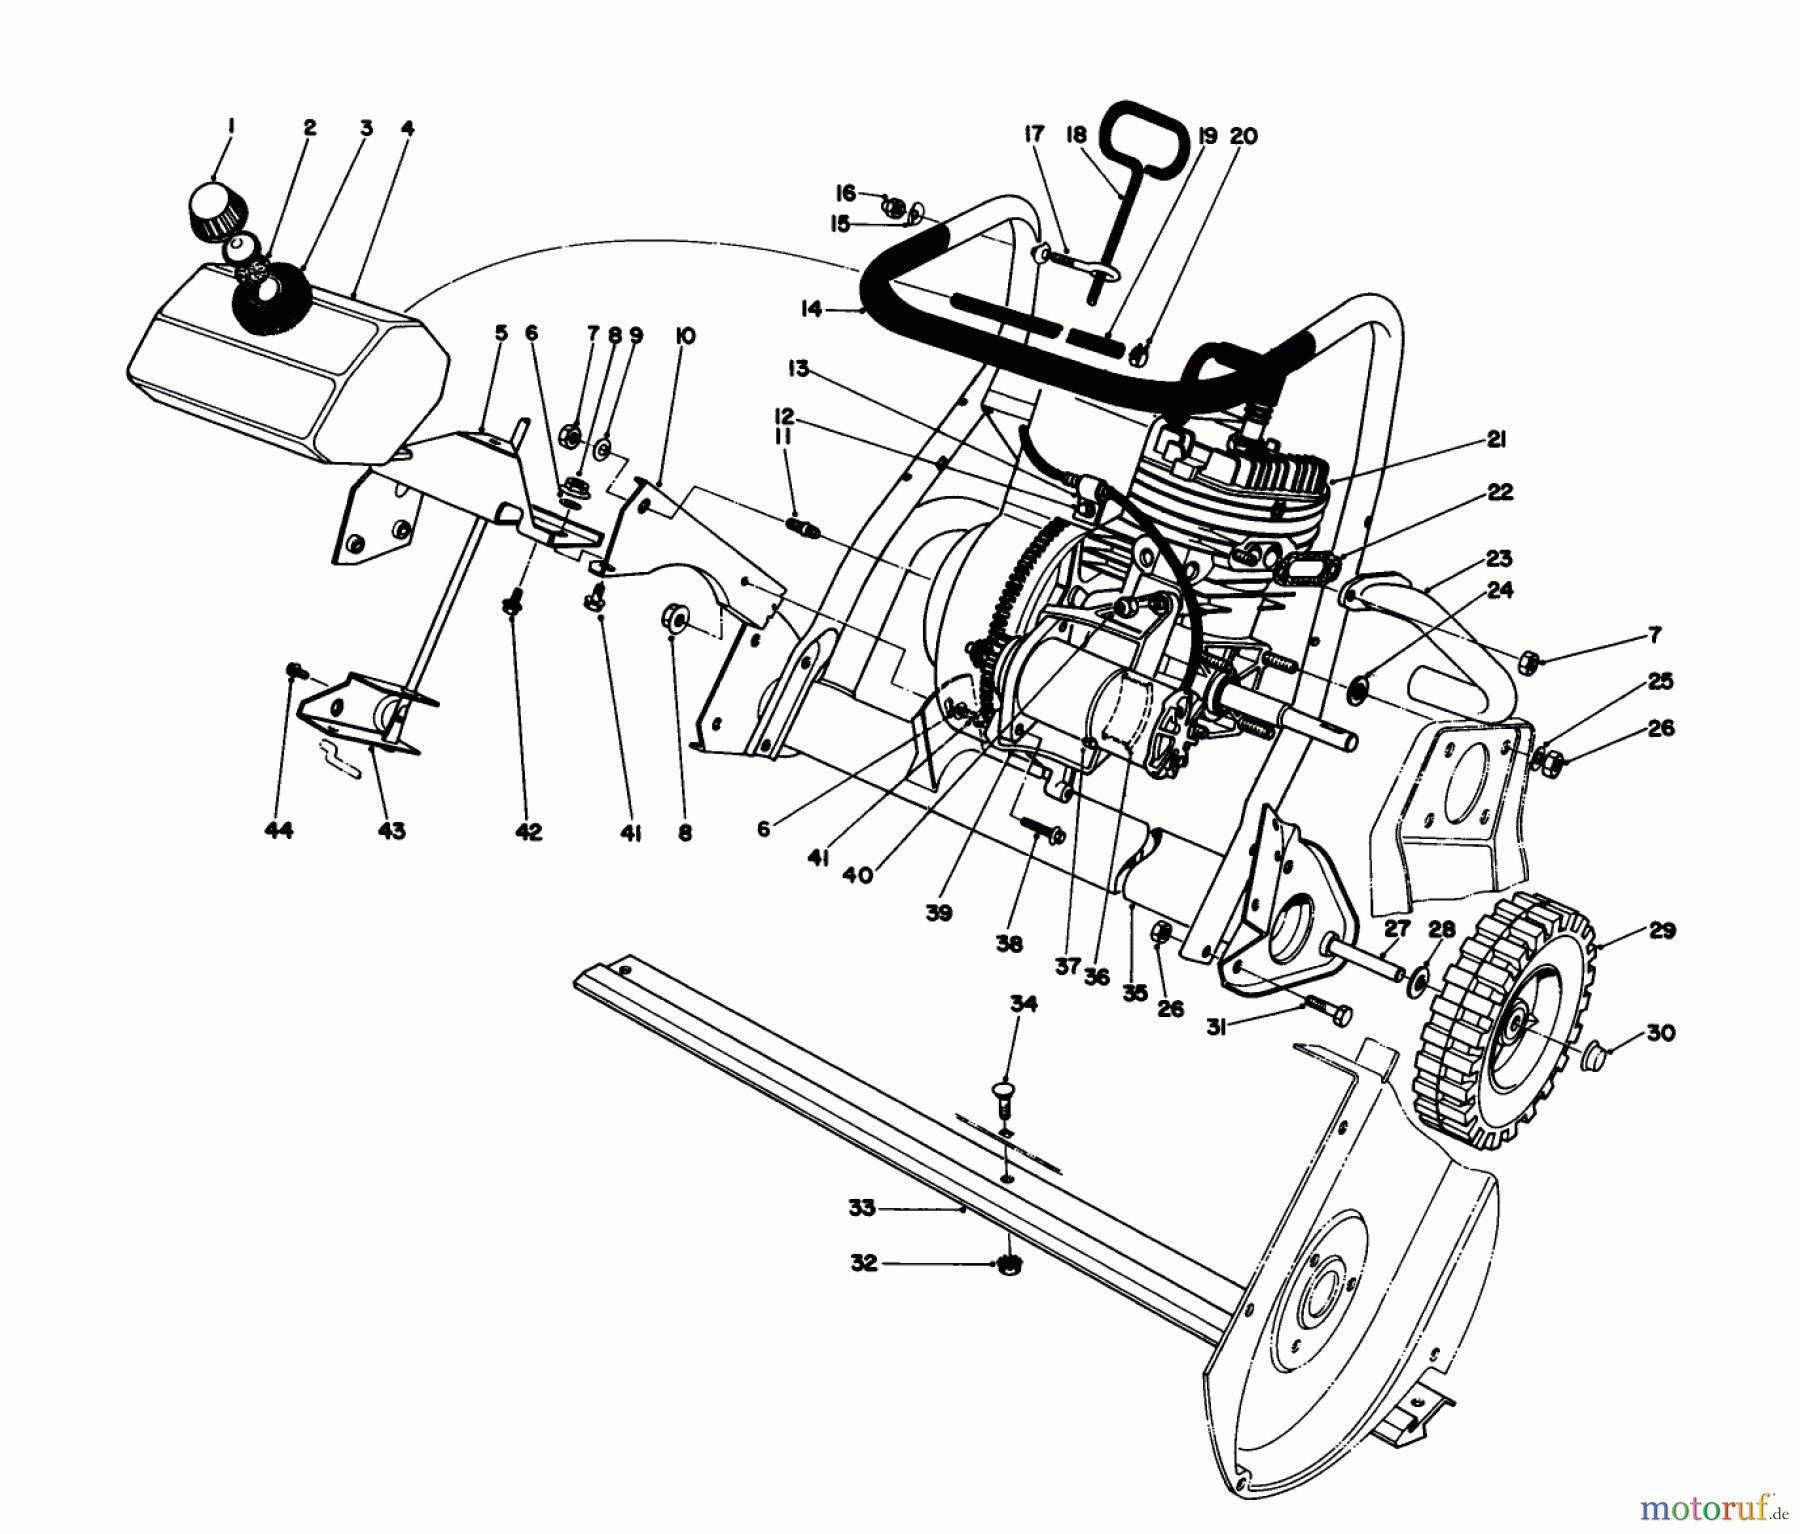  Toro Neu Snow Blowers/Snow Throwers Seite 1 38162 (S-620) - Toro S-620 Snowthrower, 1986 (6000001-6999999) ENGINE ASSEMBLY